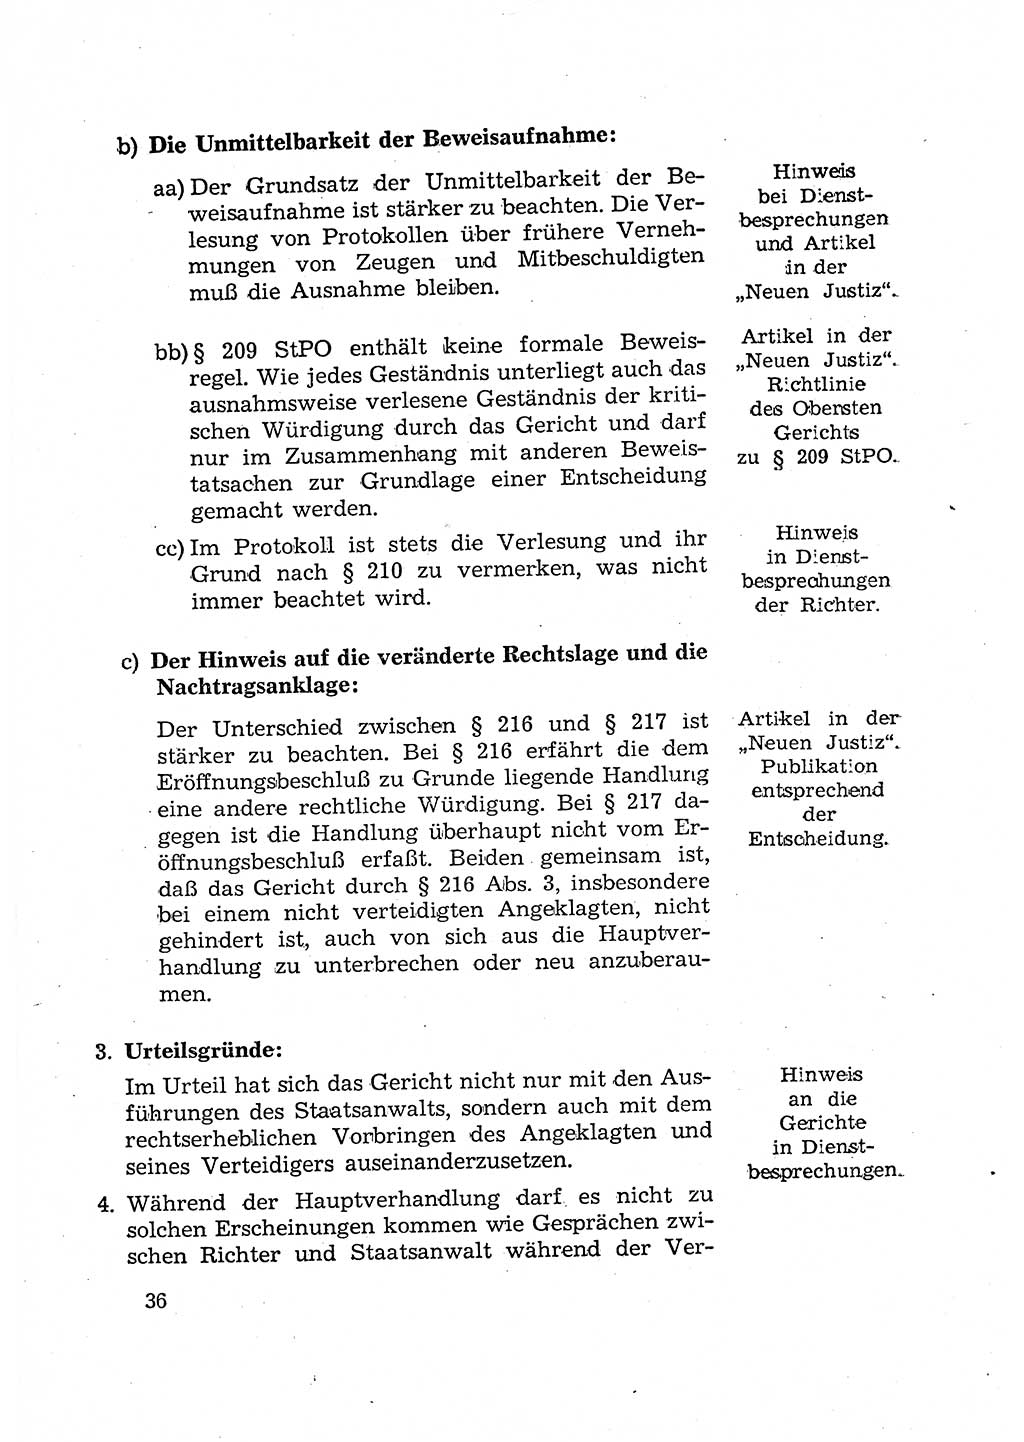 Bericht der Kommission zur Überprüfung der Anwendung der StPO (Strafprozeßordnung) [Deutsche Demokratische Republik (DDR)] 1956, Seite 36 (Ber. StPO DDR 1956, S. 36)